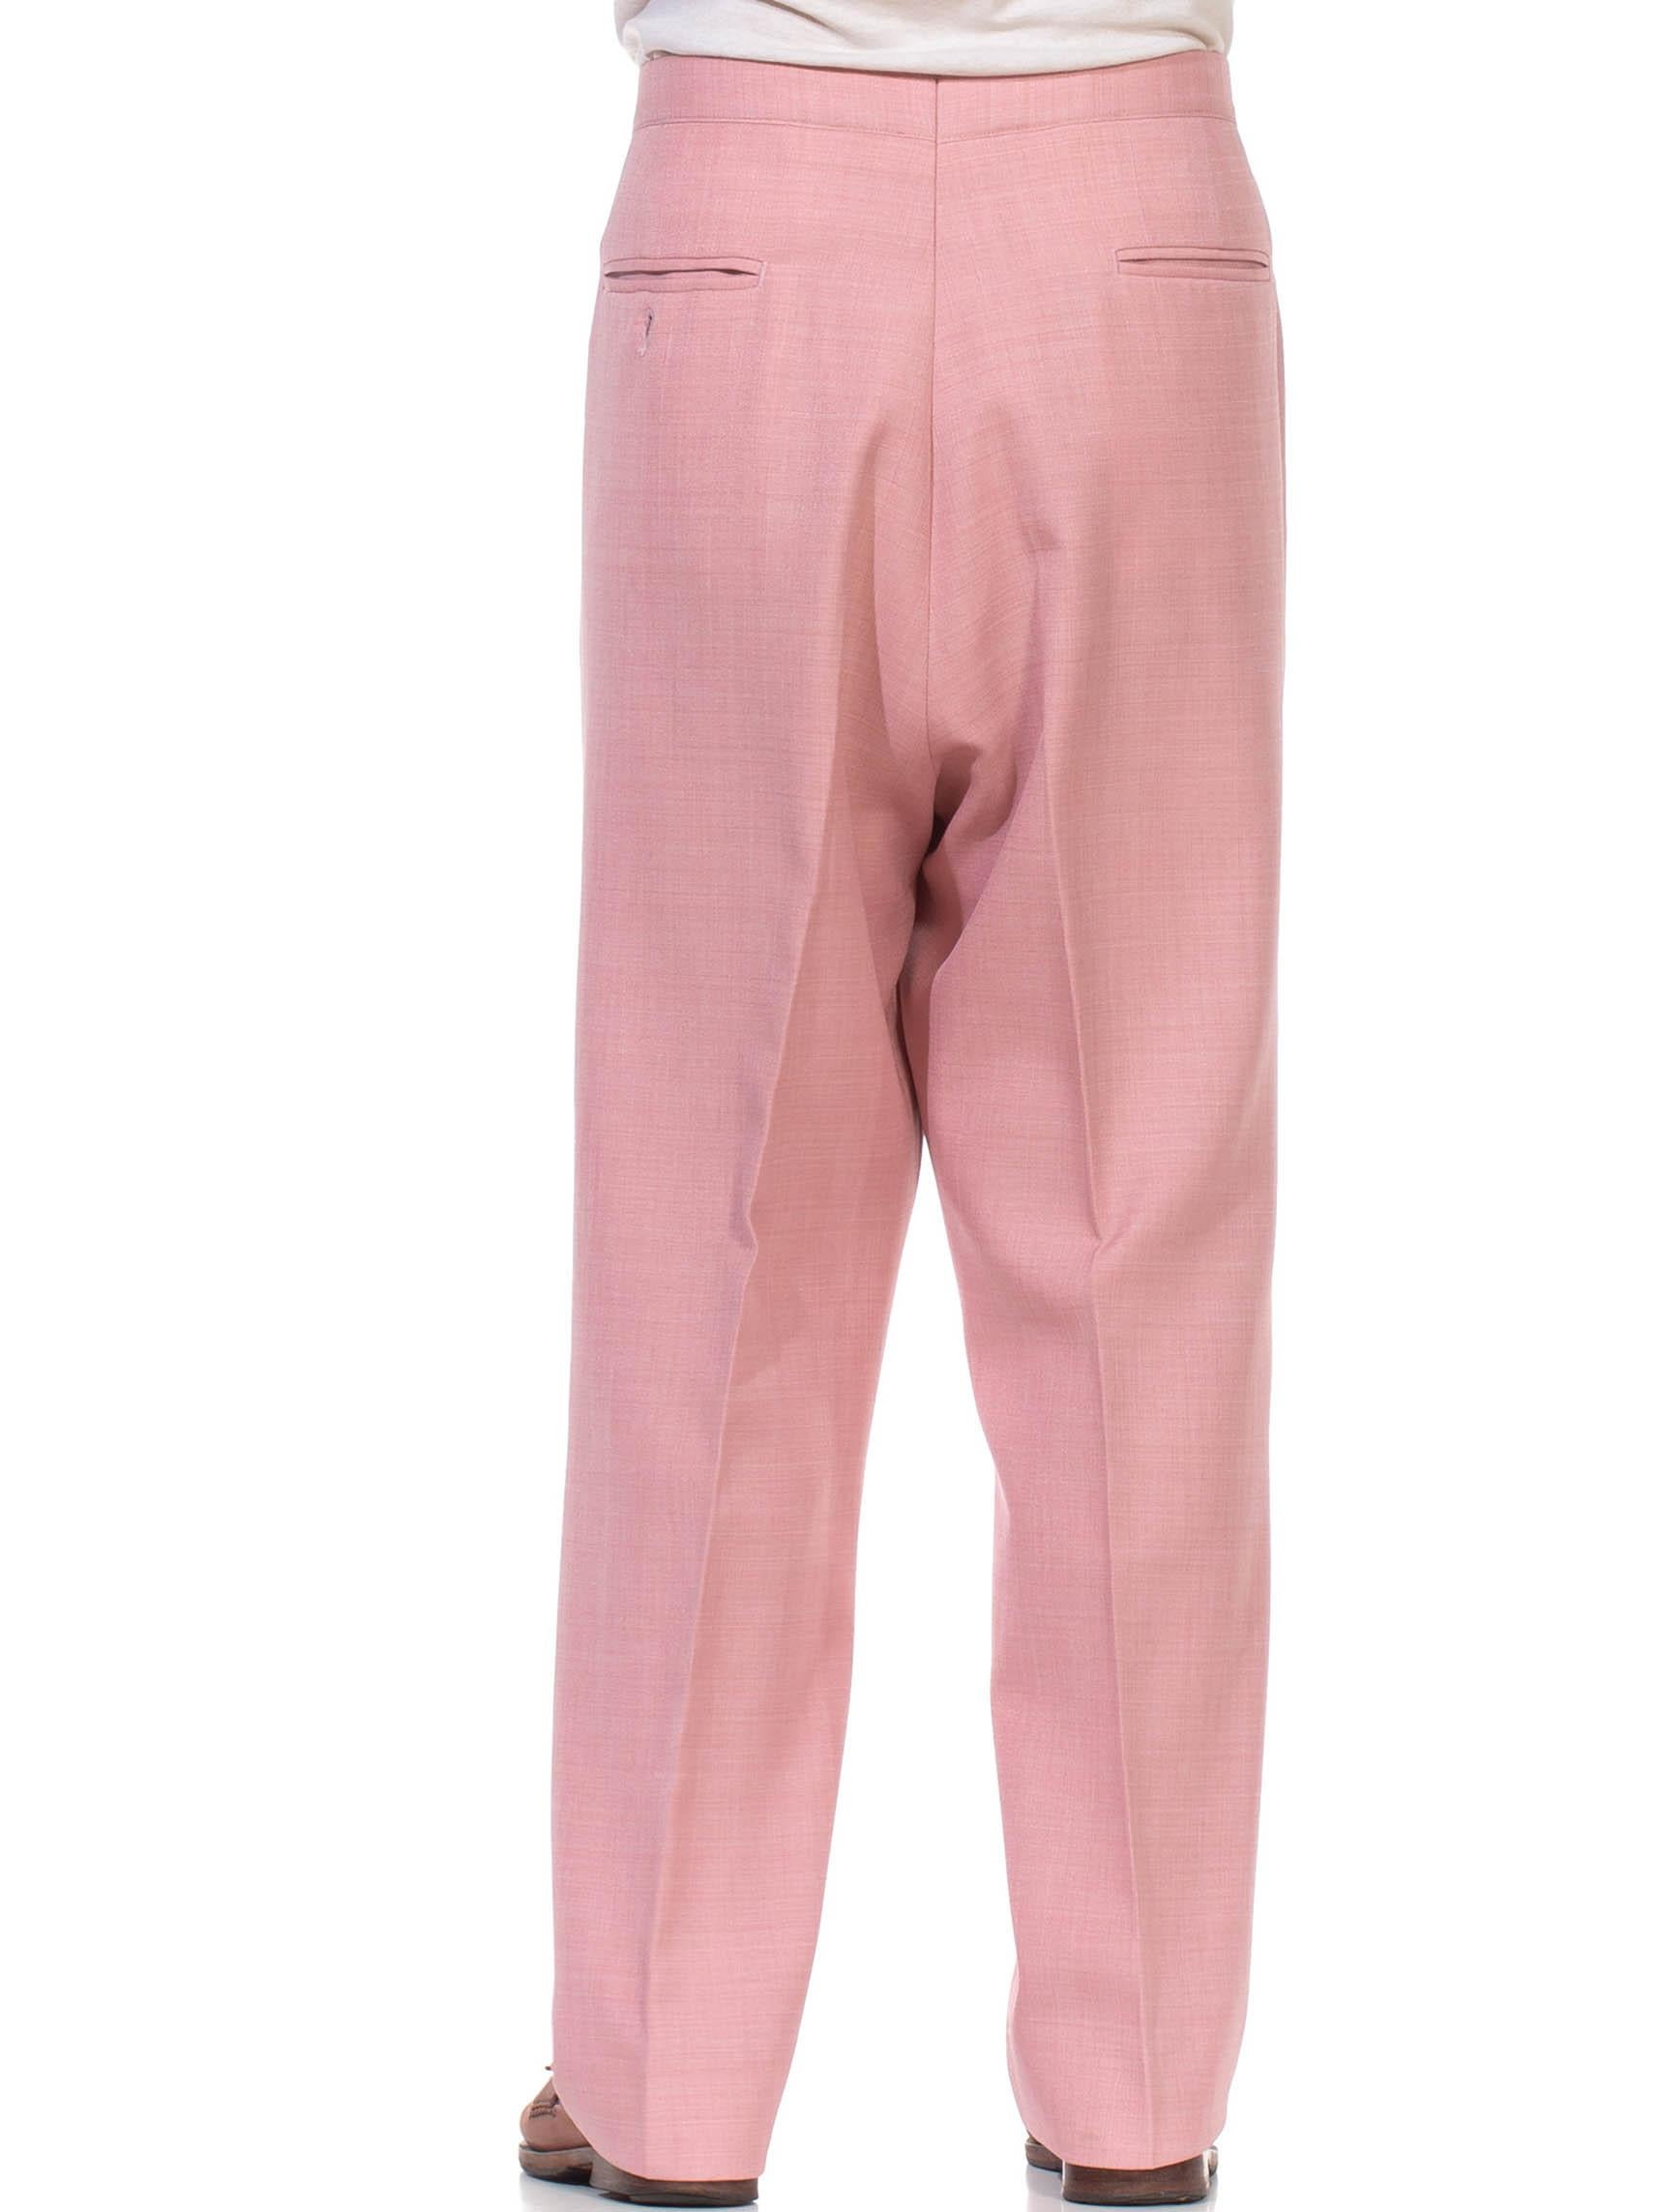 1970S JAYMAR SANS A BELT Light Pink Polyester Men's Pants For Sale 3